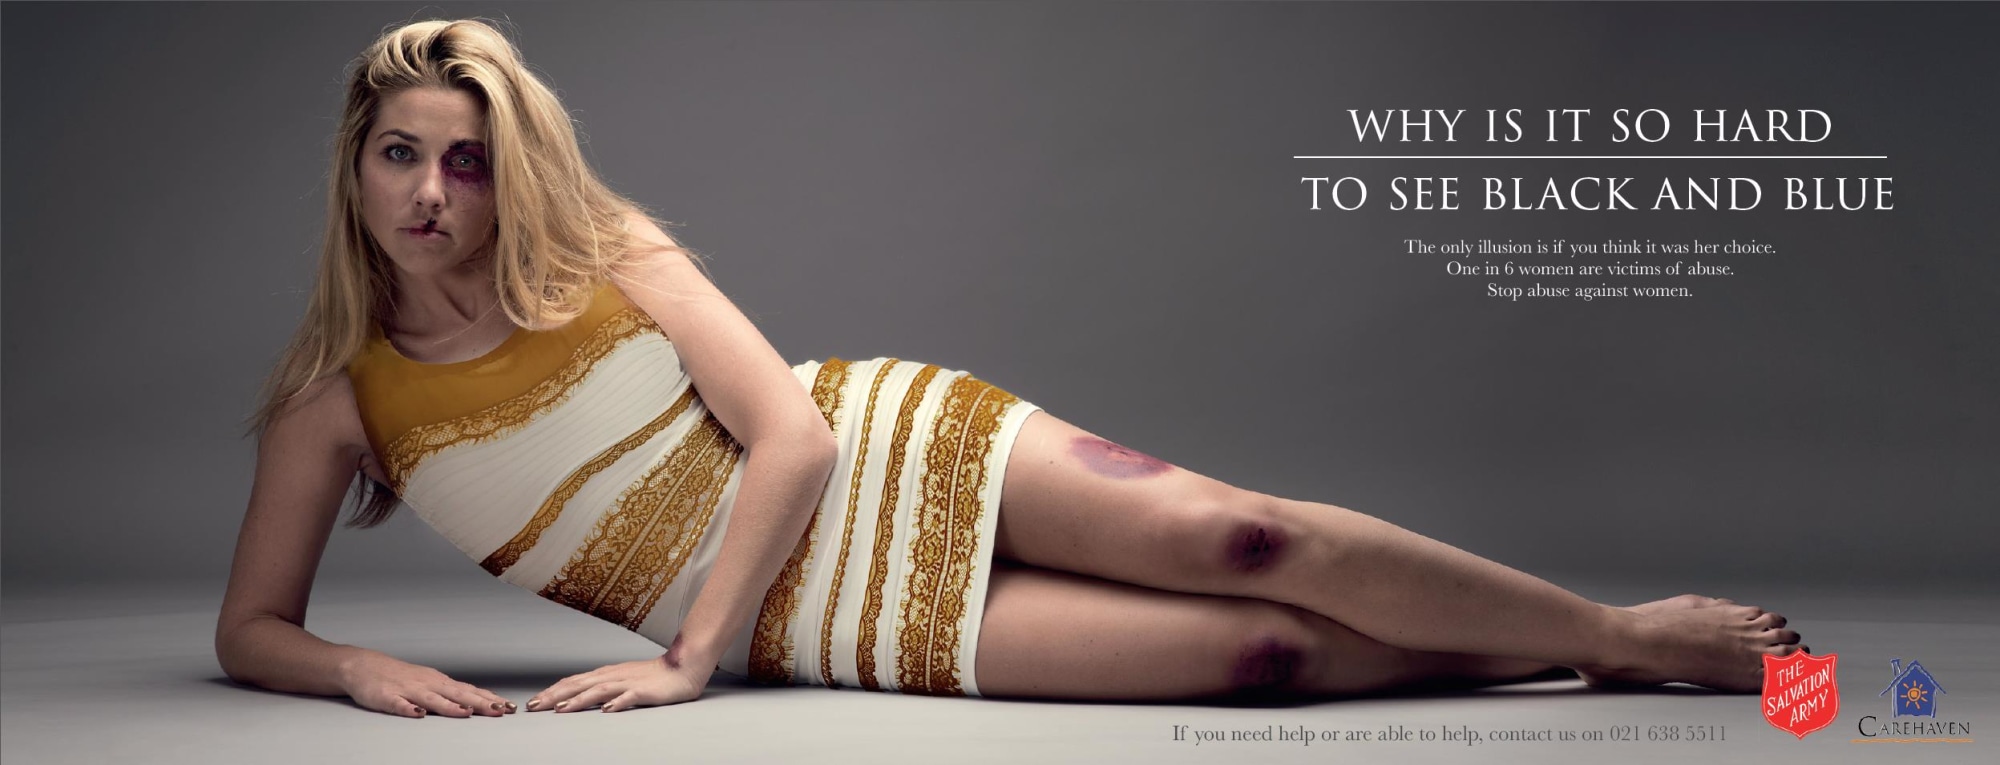 קמפיין RTM ל"שמלת המריבה" של צבע הישועה בדרום אפריקה 